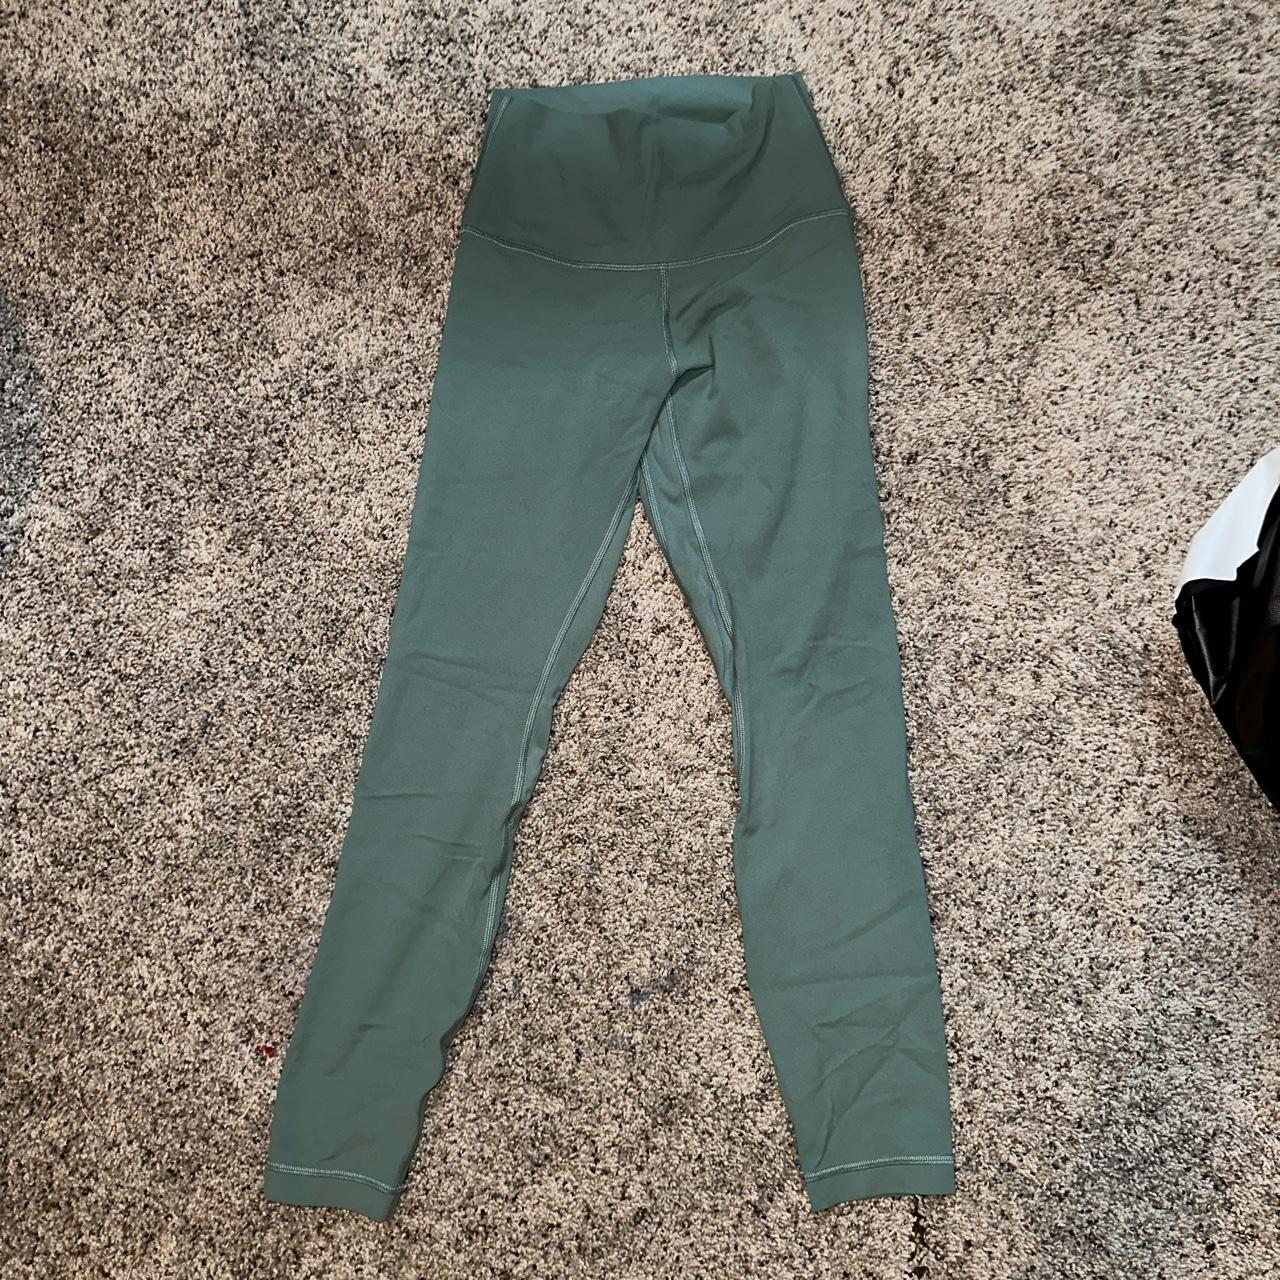 Mint green Lululemon Align 25” leggings. Size 4.